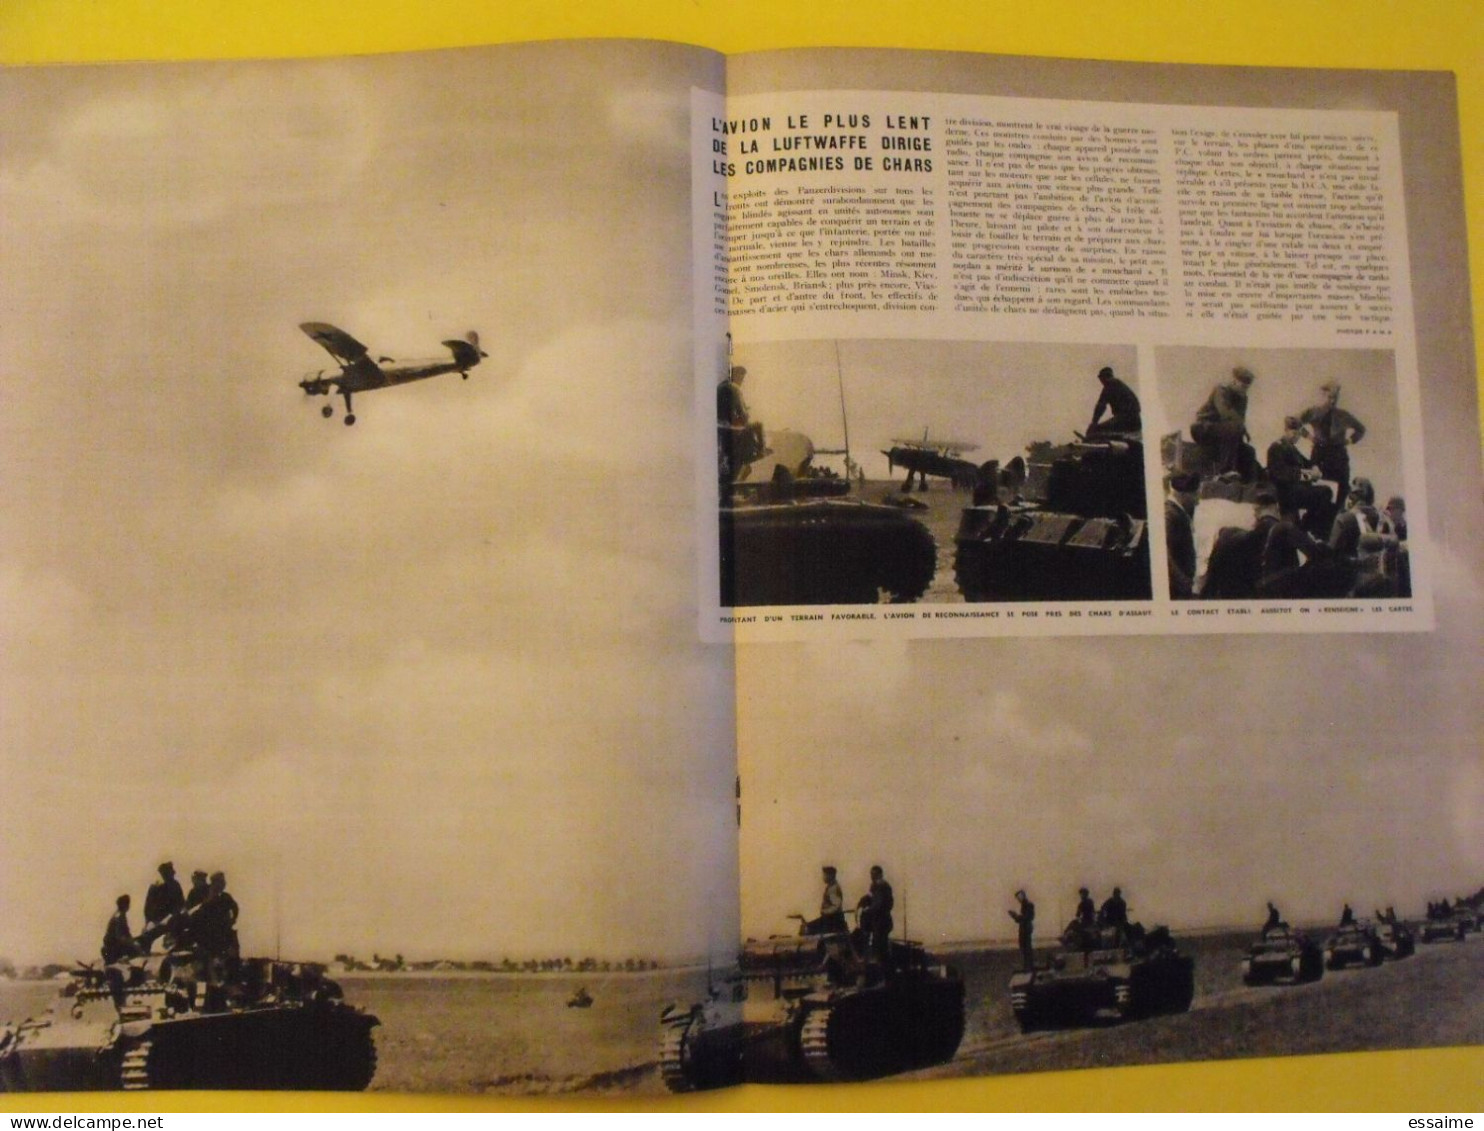 8 revues La semaine de 1941. actualités guerre. photos collaboration pacifique japon singapour baroncelli pétain